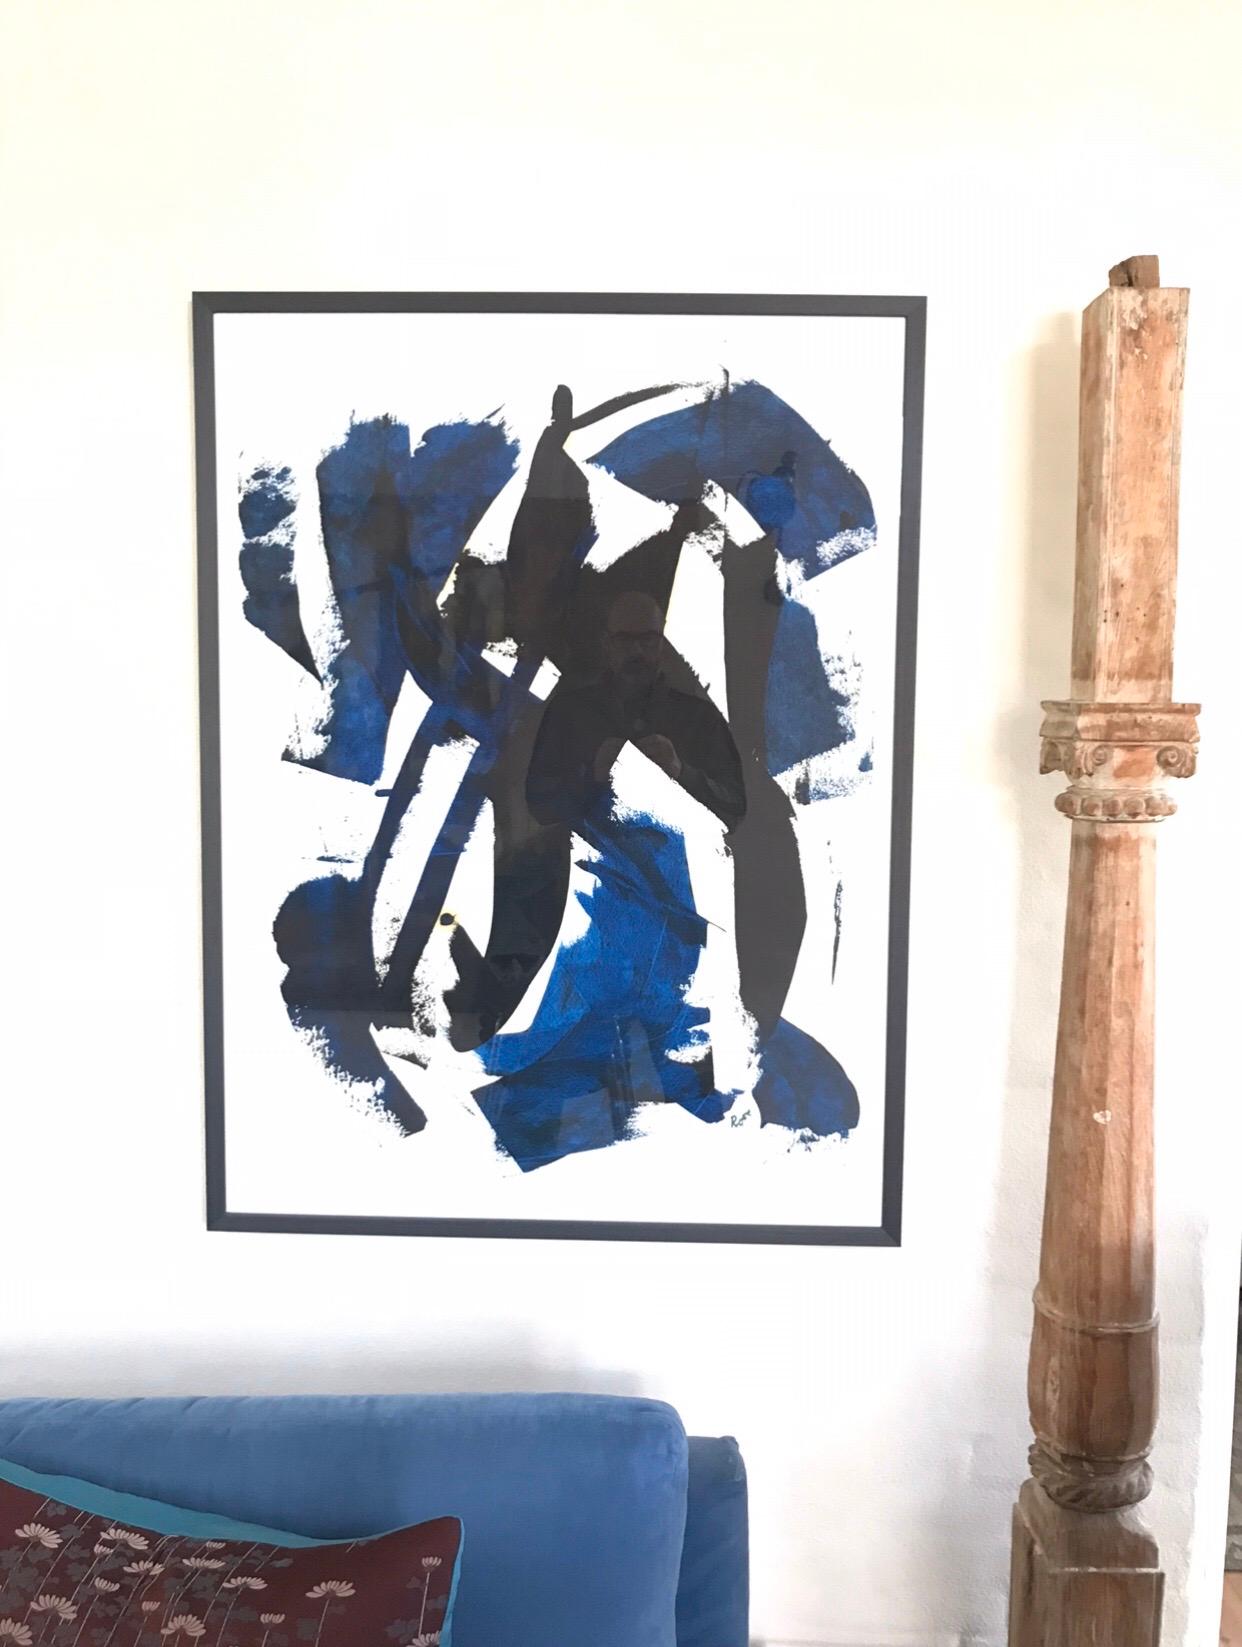 Öl auf Papier
Schwarz macht Platz für Blau
Von Jan Rose
Jan Rose hat ein interessantes Leben geführt: Er war bei der französischen Fremdenlegion, Leibwächter für die Stars, Autor und jetzt Künstler.
Jan Rose ist außerordentlich gut darin, Form,